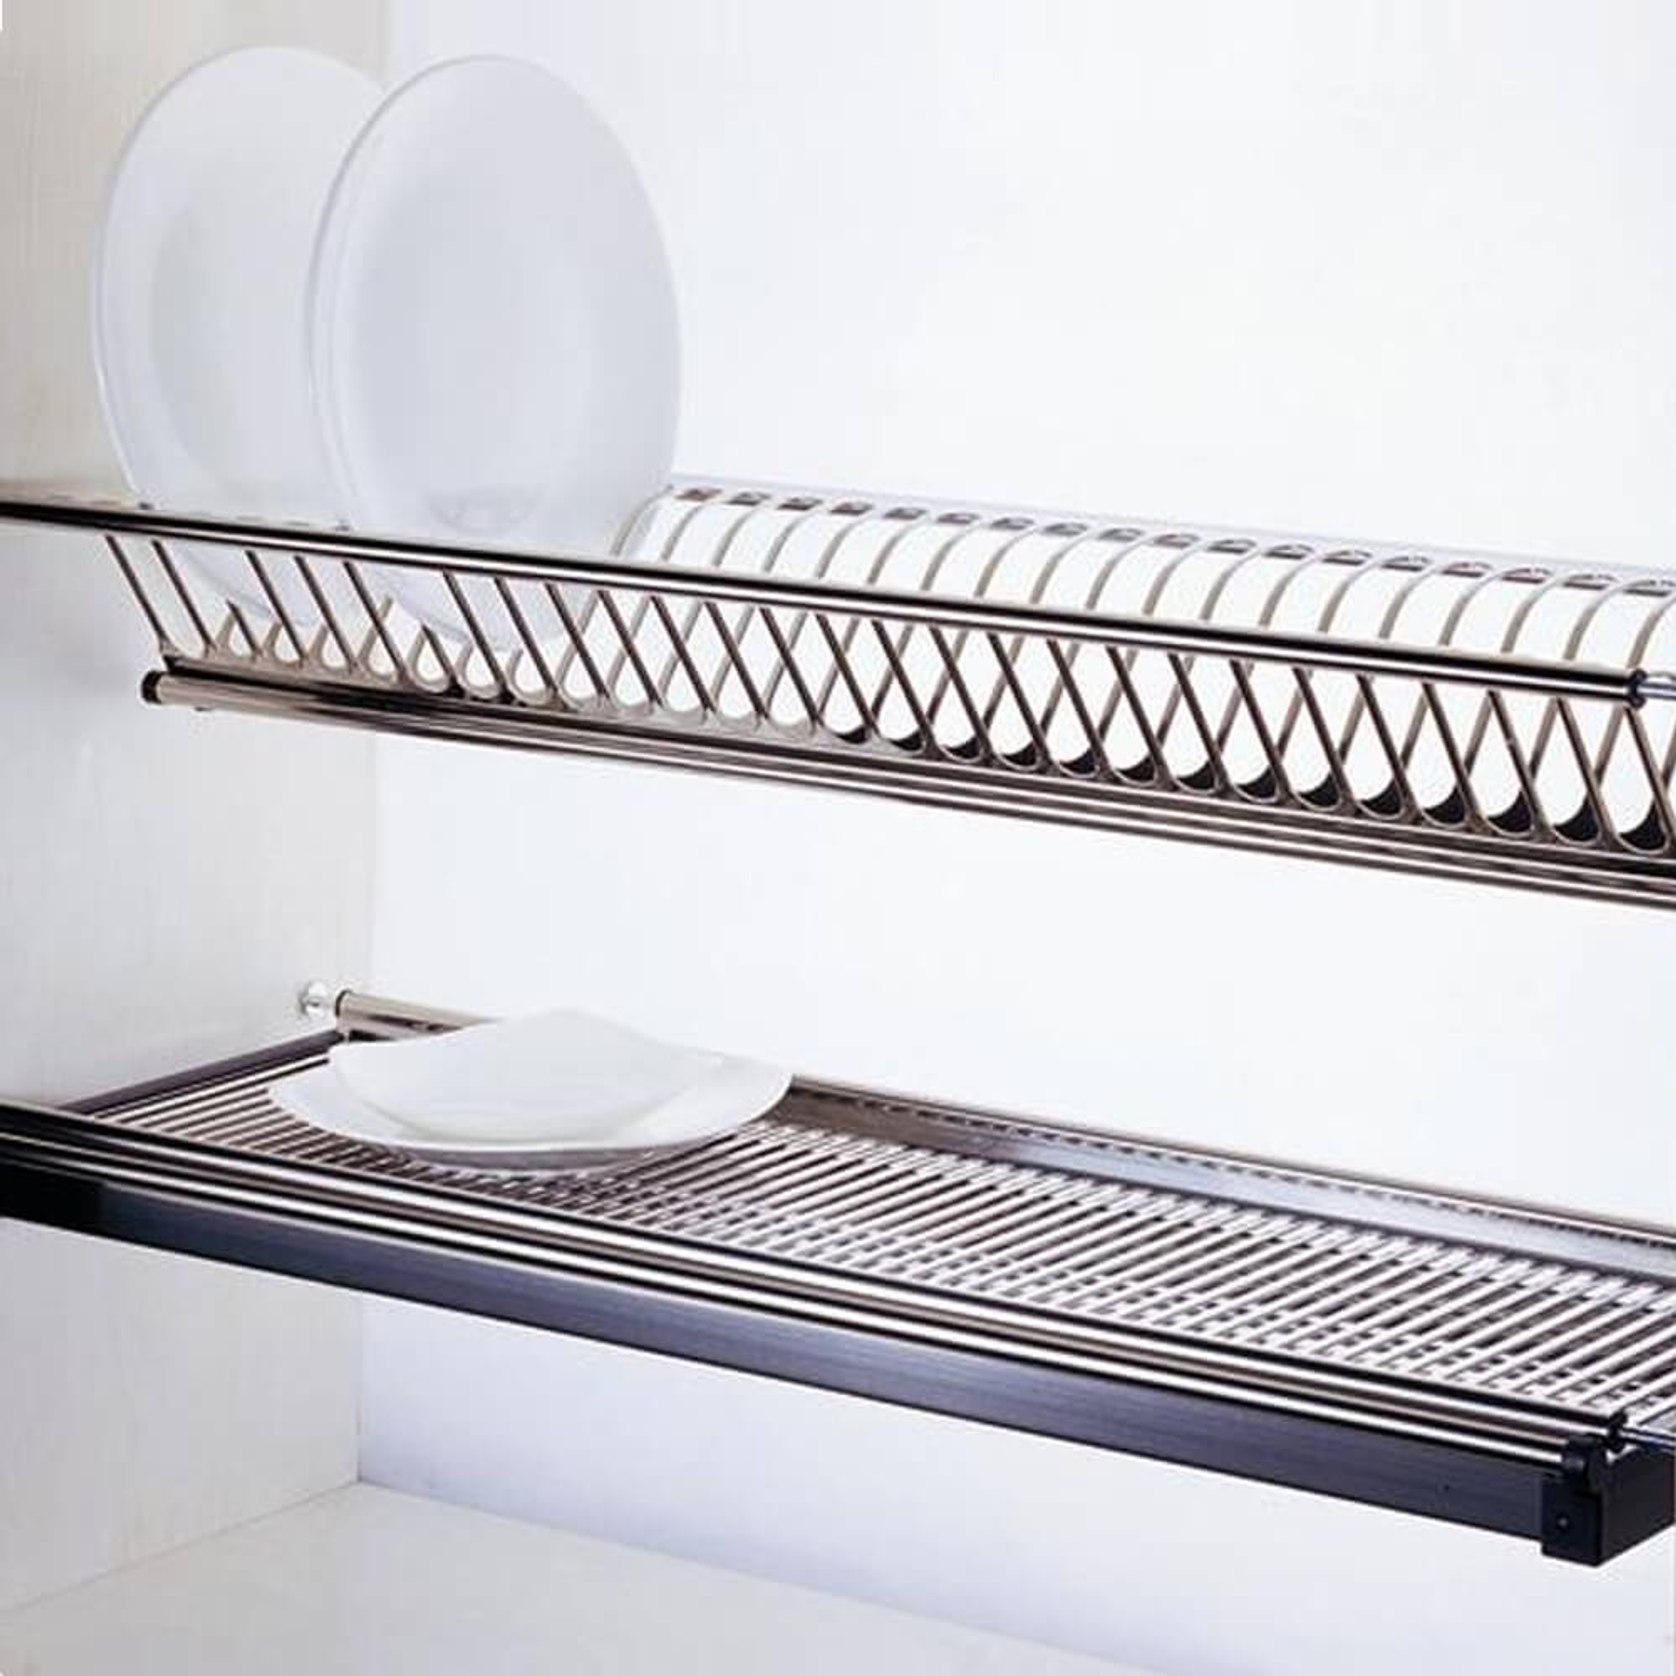 https://archipro.com.au/images/s1/product/misc/kitchen-cupboard-dish-rack-600mm-90mm-upper-lower-unbranded.jpg/eyJlZGl0cyI6W3sidHlwZSI6InpwY2YiLCJvcHRpb25zIjp7ImJveFdpZHRoIjoxNjc2LCJib3hIZWlnaHQiOjE2NzYsInpvb21XaWR0aCI6MTY3Niwic2Nyb2xsUG9zWCI6NTAsInNjcm9sbFBvc1kiOjUwLCJiYWNrZ3JvdW5kIjoiI2U4ZTllYiIsImZpbHRlciI6MH19LHsidHlwZSI6ImZsYXR0ZW4iLCJvcHRpb25zIjp7ImJhY2tncm91bmQiOiIjZmZmZmZmIn19XSwicXVhbGl0eSI6ODcsInRvRm9ybWF0IjoianBnIn0=